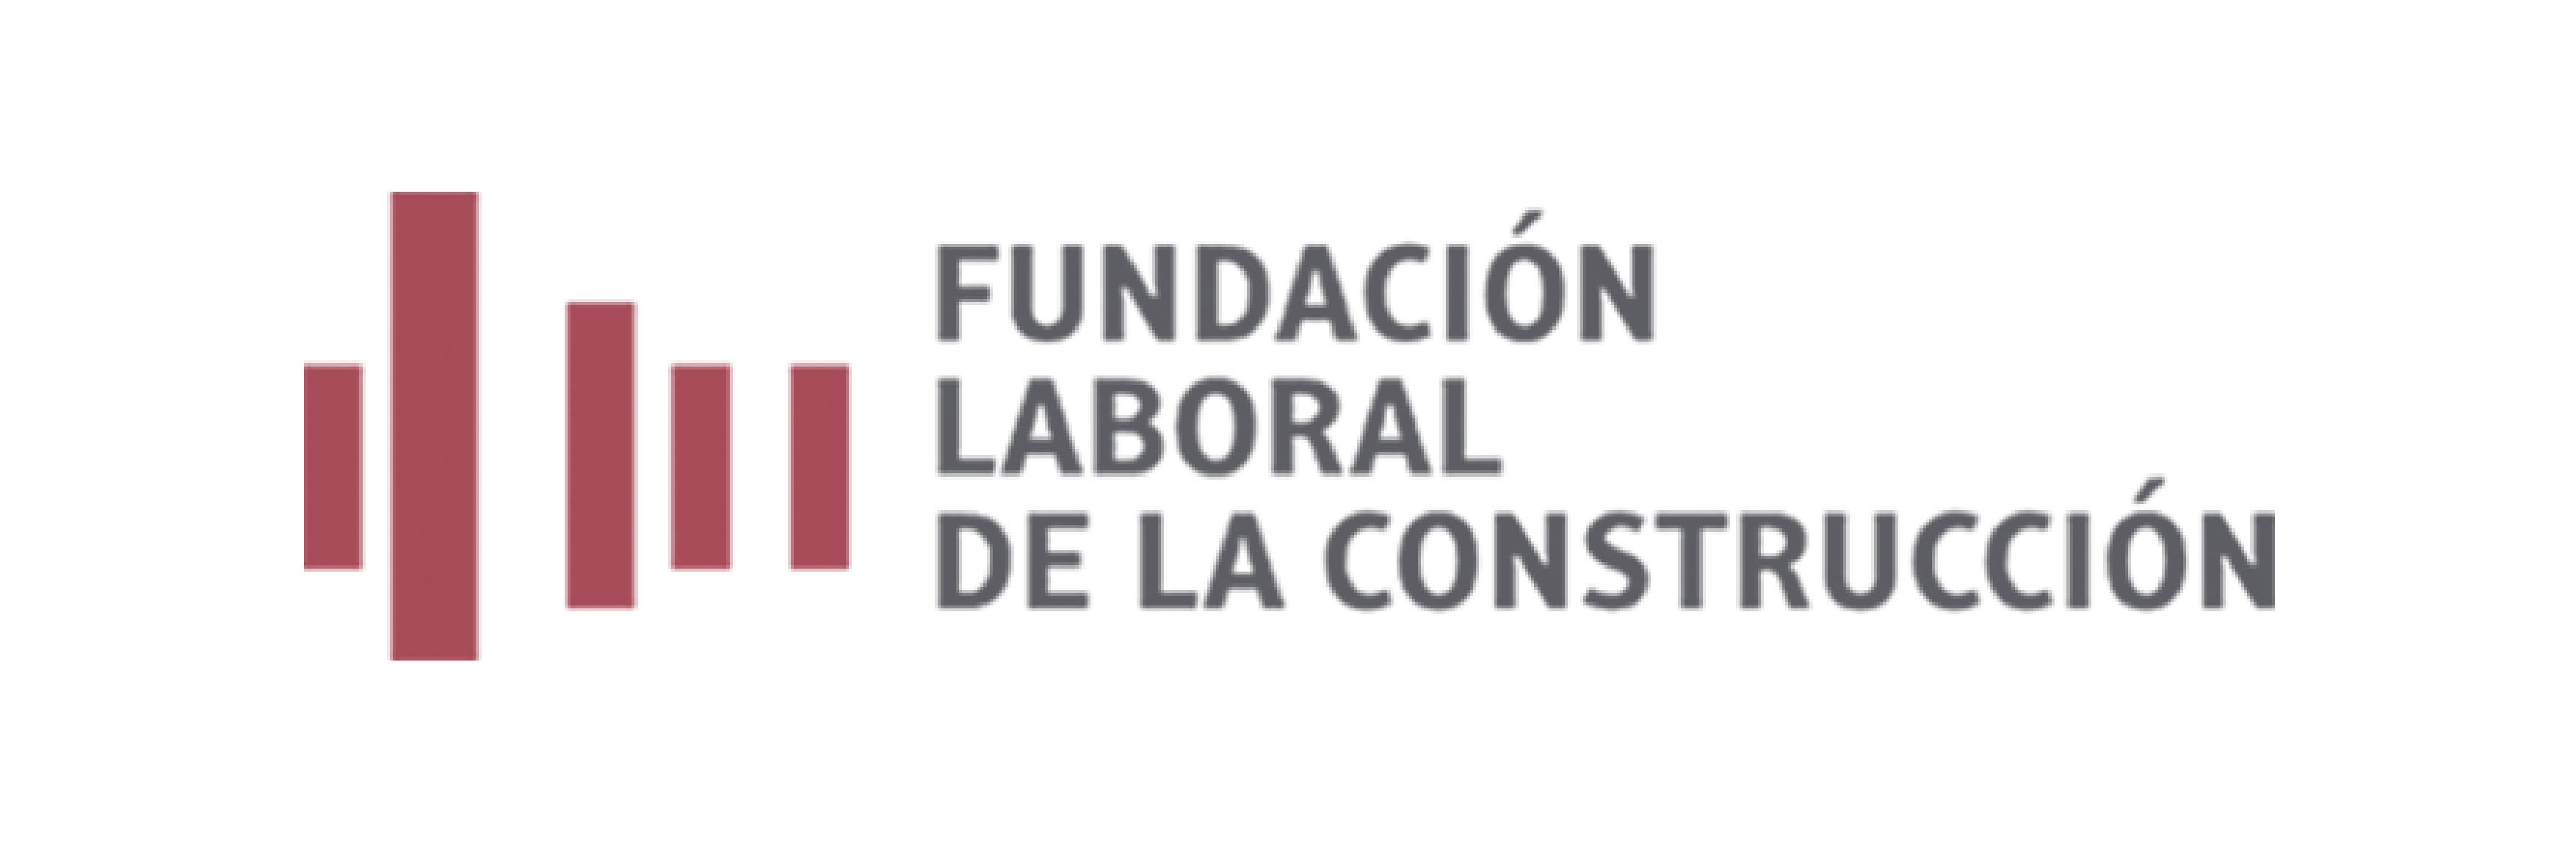 Construction Labour Foundation